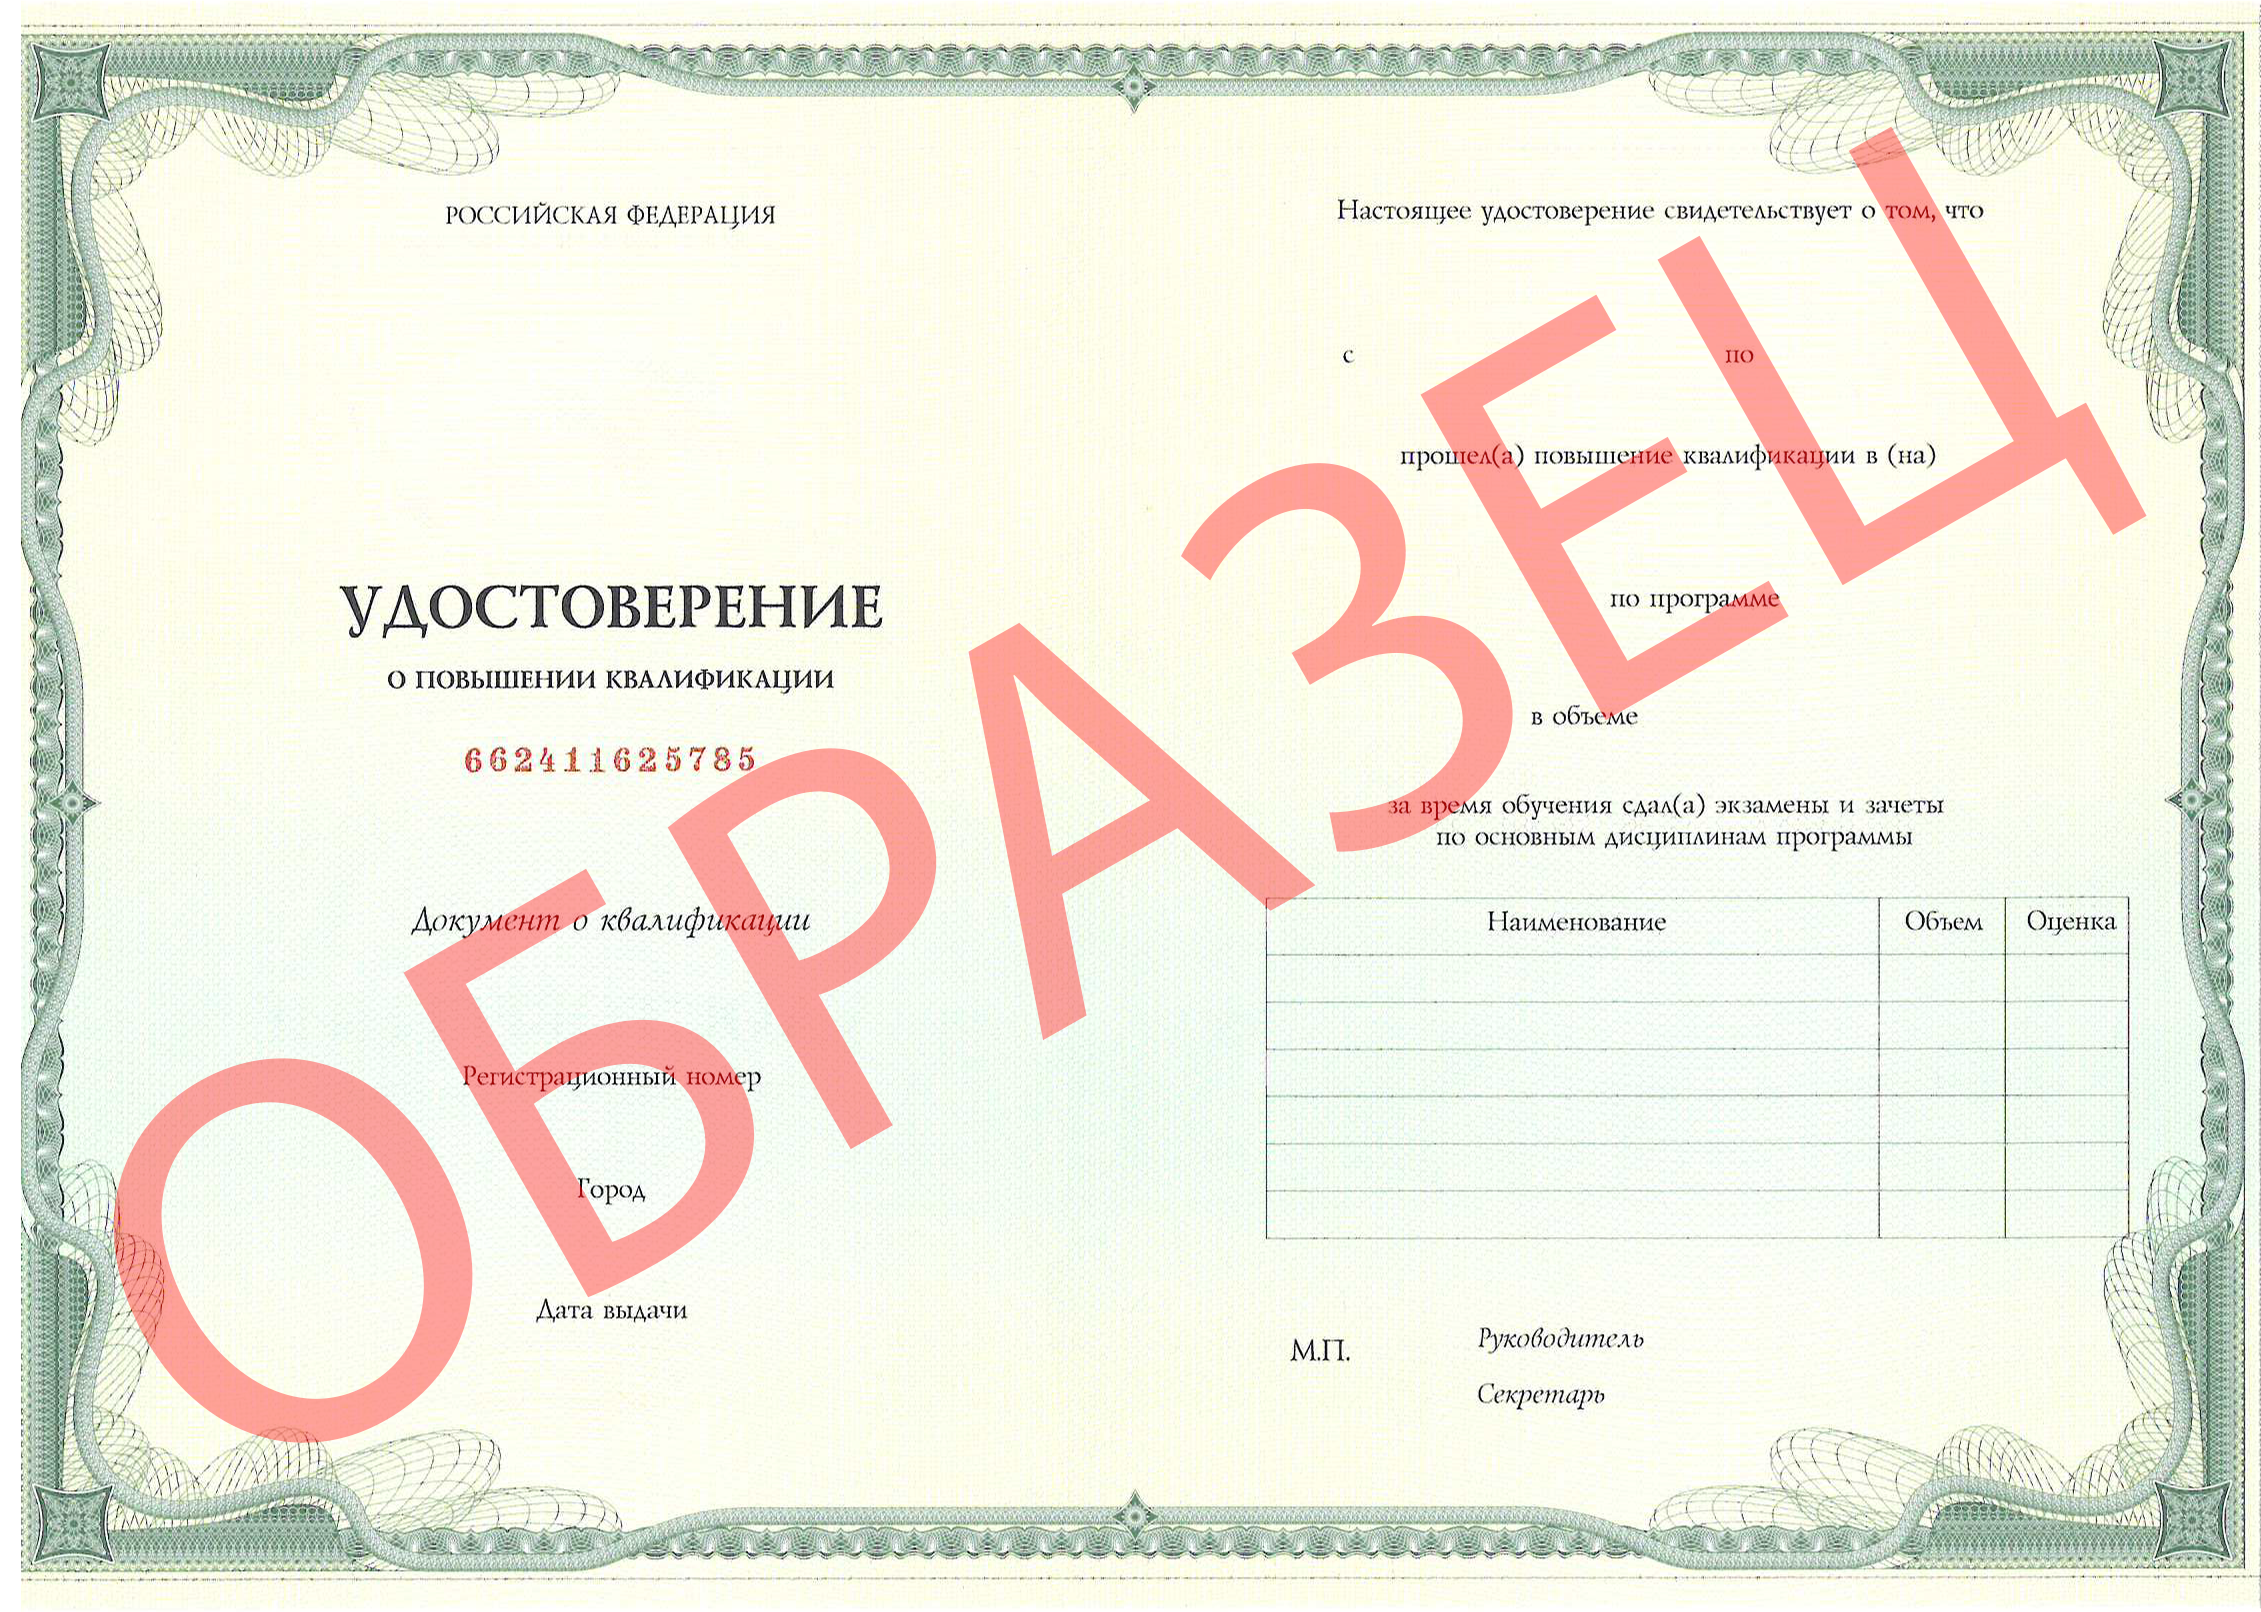 Образец документа о прохождении обучения - Паспорт аккредитации по специальности "Фтизиатрия" афт